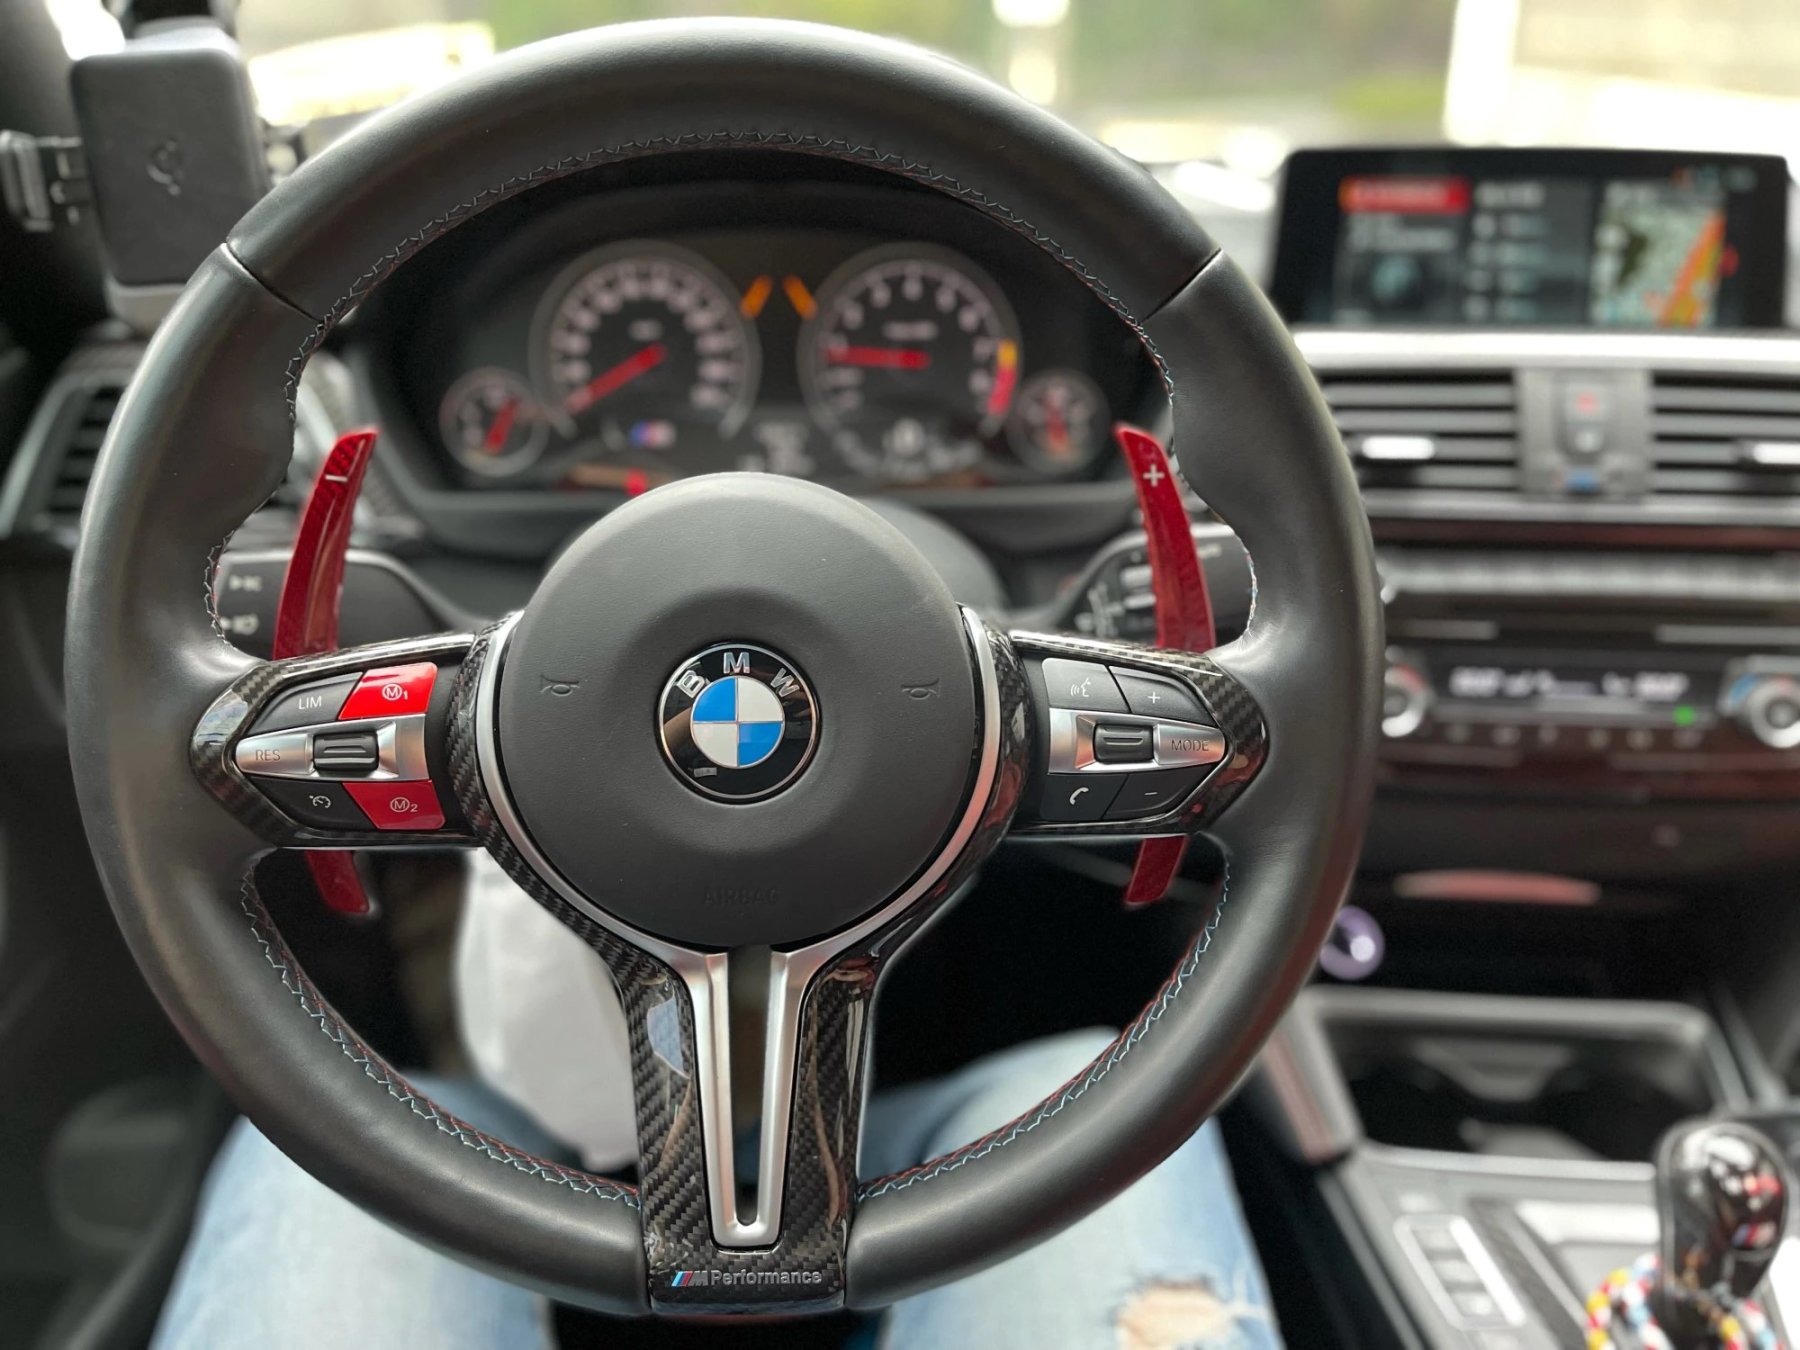 BMW G20 - INTERIEUR - Swiss Tuning Onlineshop - CARBON FIBER SCHALTWIPPEN  VERLÄNGERUNGEN 2ER SET CARBON SCHALTPADDELS BMW BMW M2, M3, M4, M5, M6, X